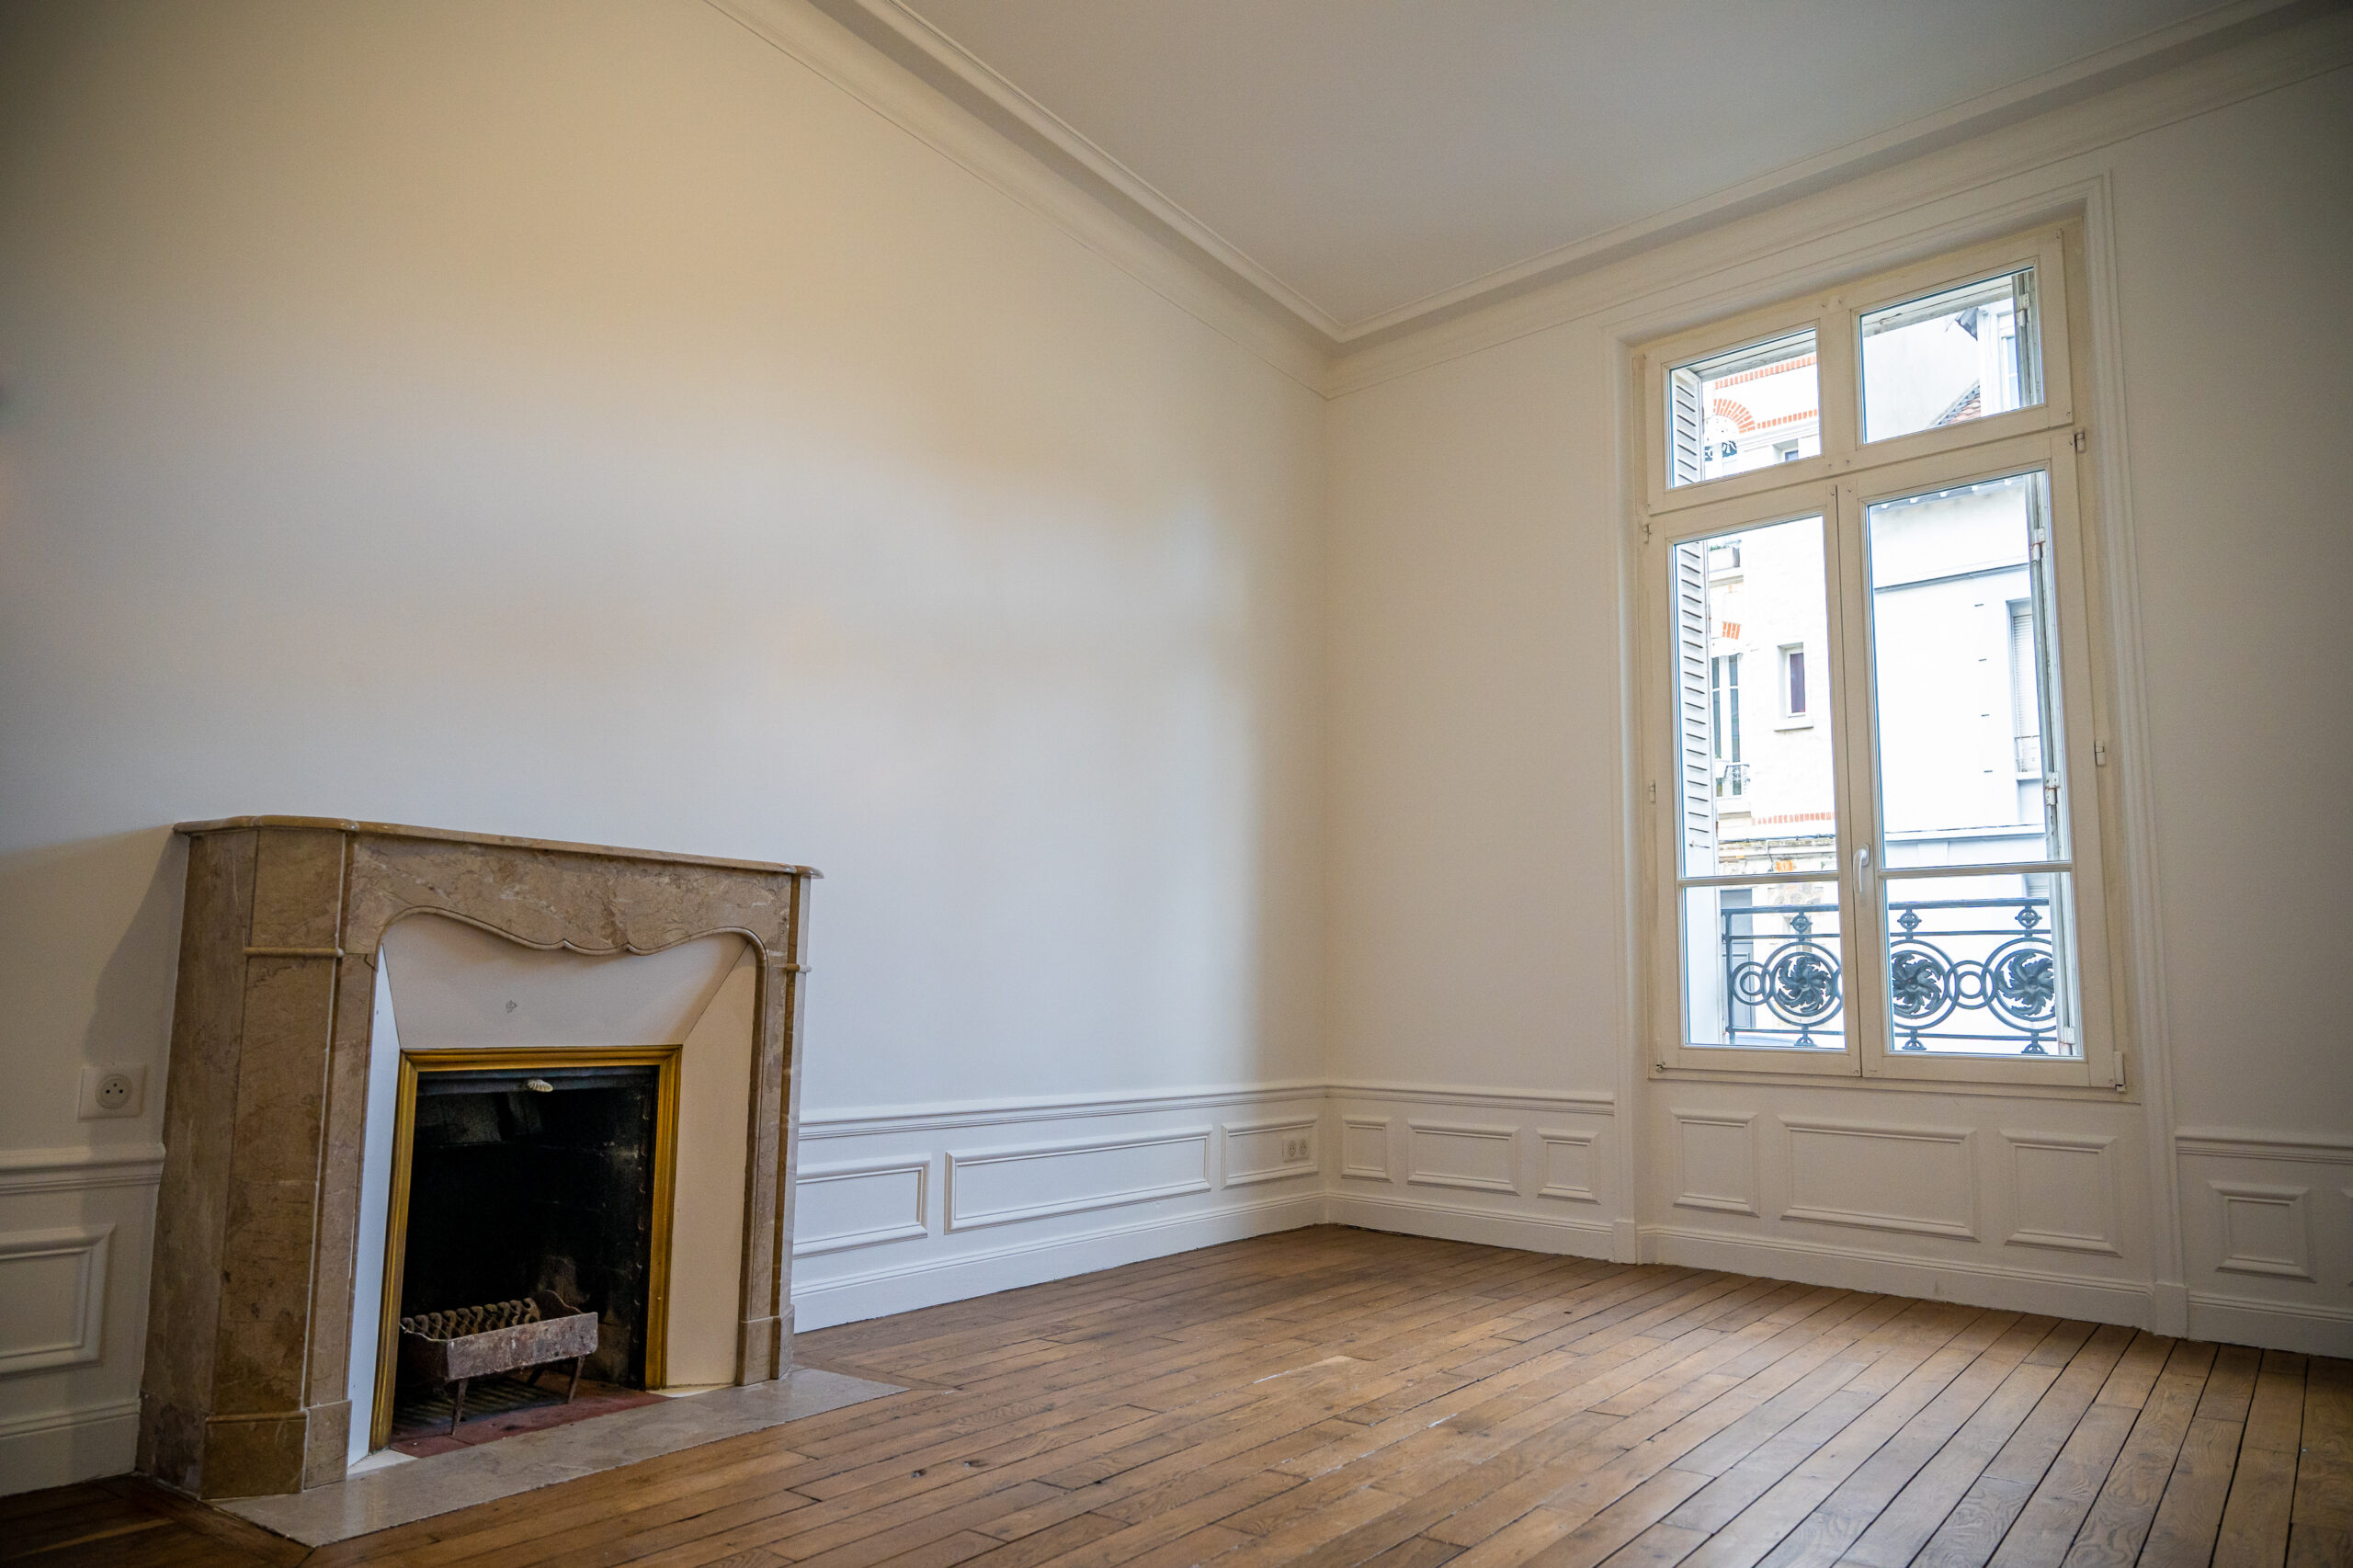 Optimisez la rénovation de votre maison haussmannienne à Paris avec ces secrets éprouvés.